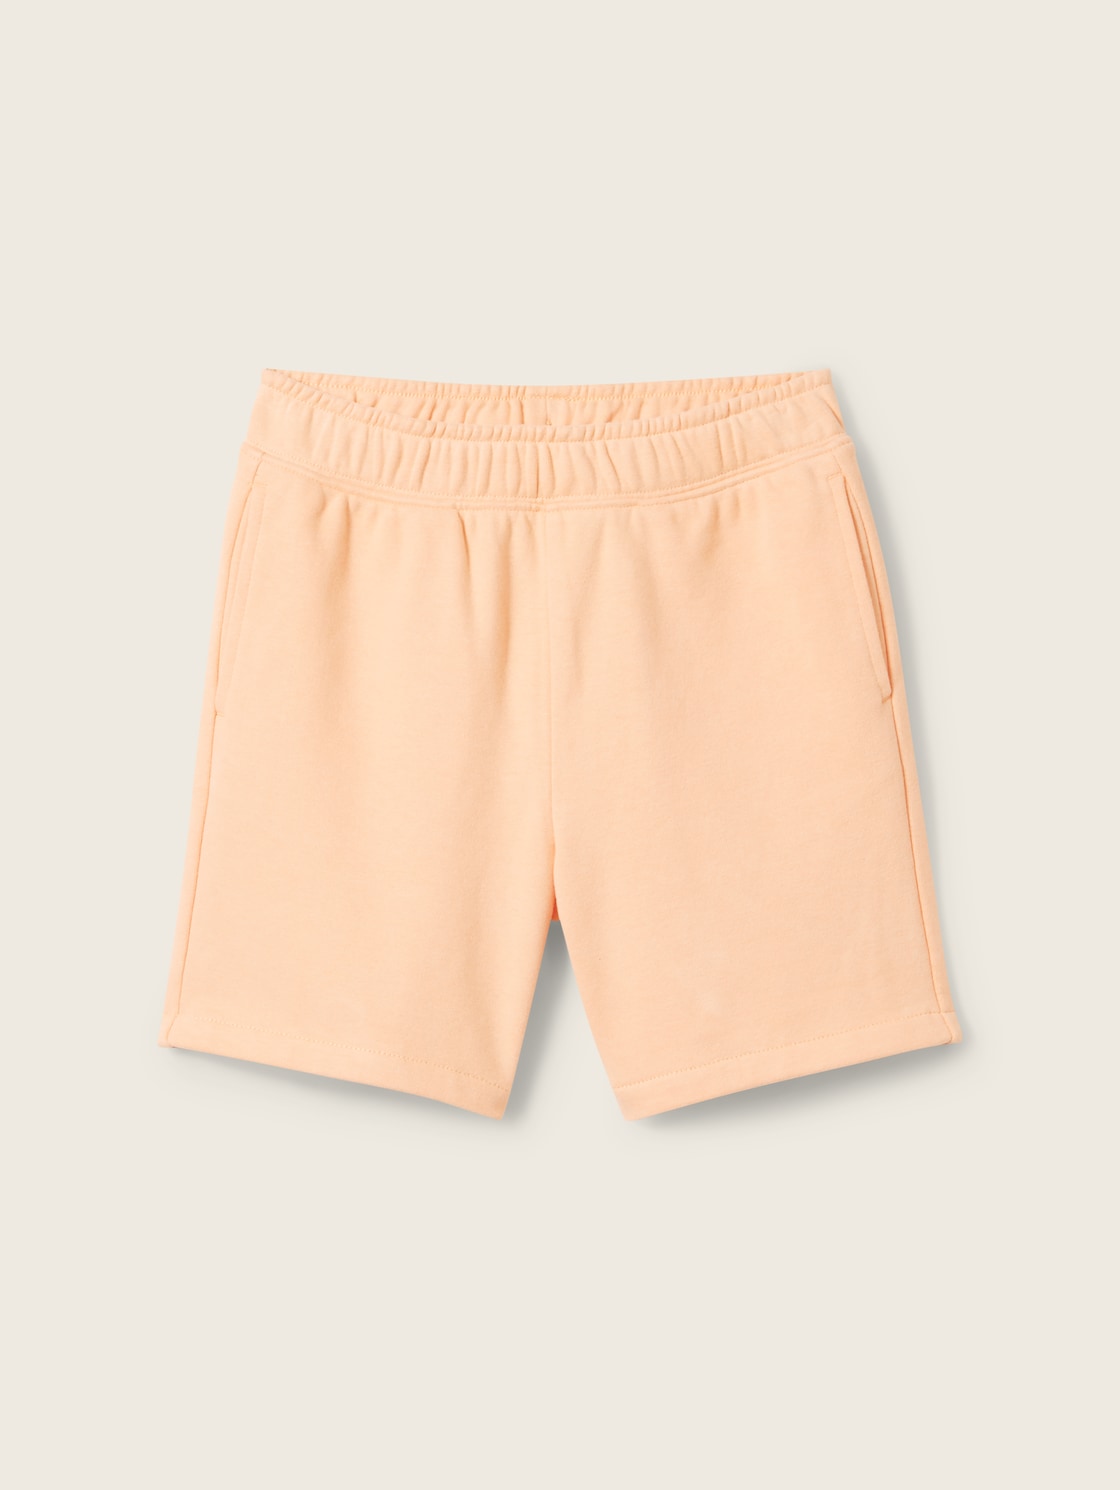 TOM TAILOR Jungen Basic Sweat Shorts, orange, Uni, Gr. 128/134 von Tom Tailor